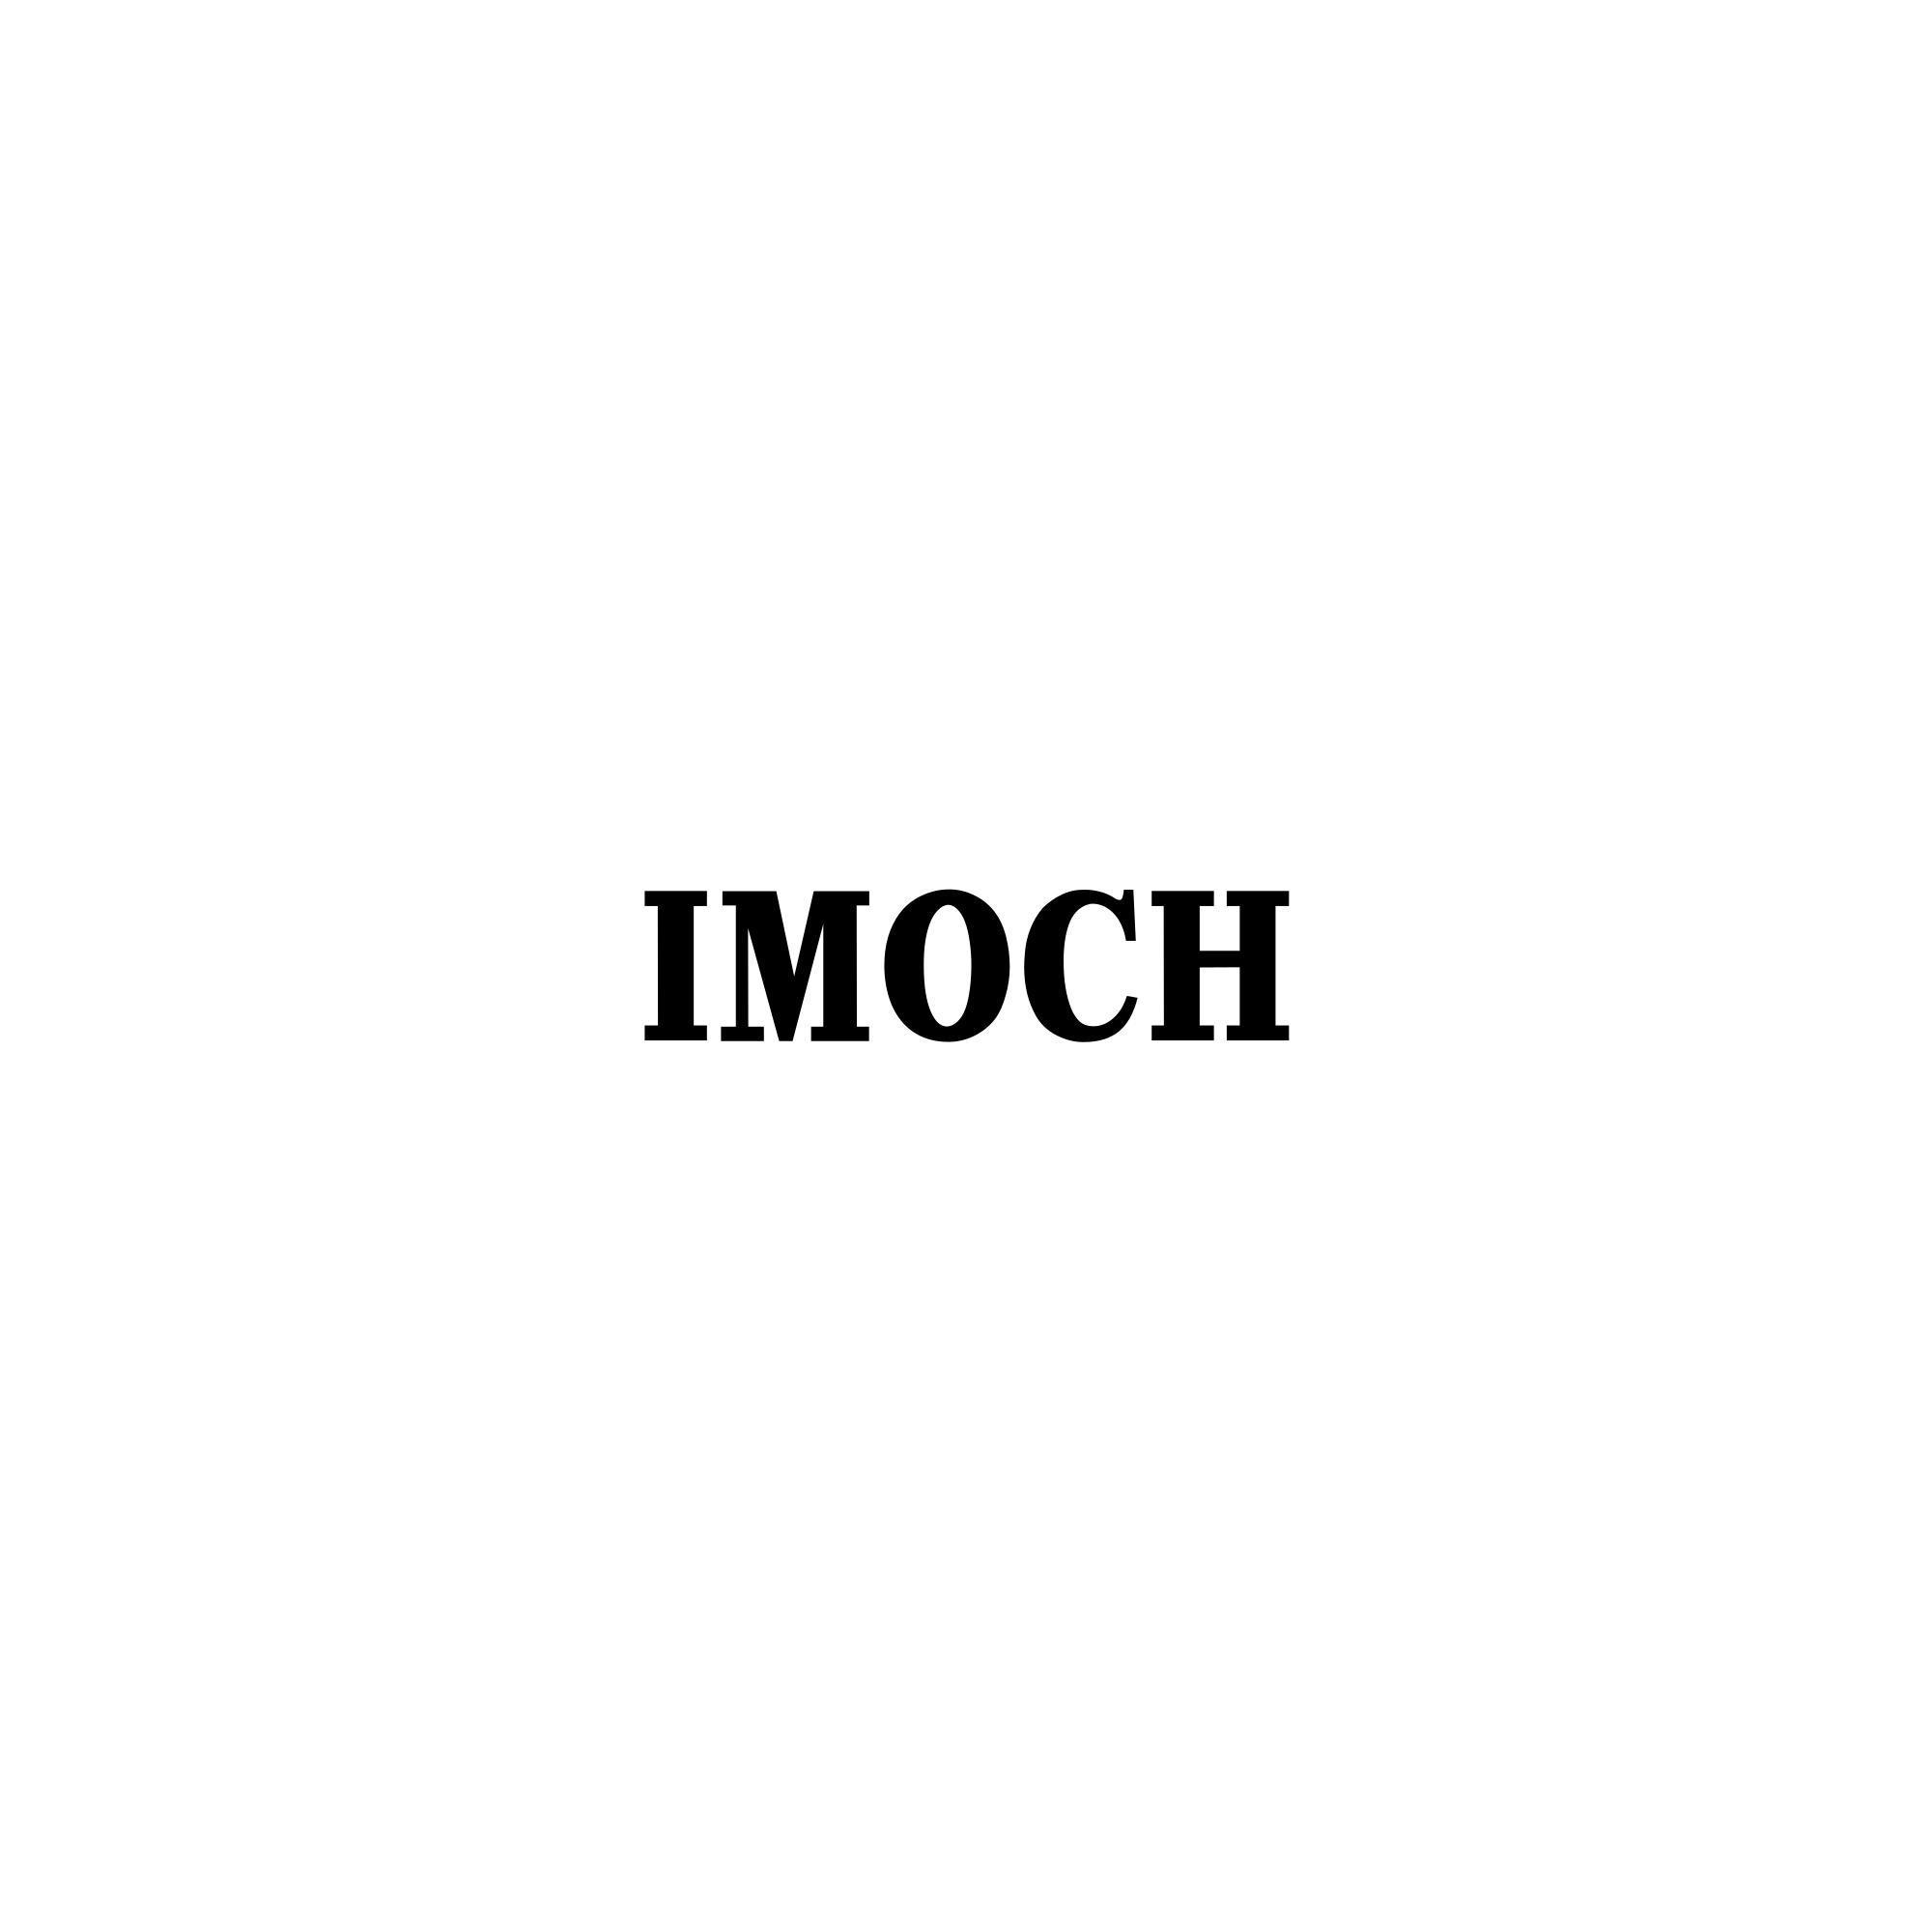 IMOCH